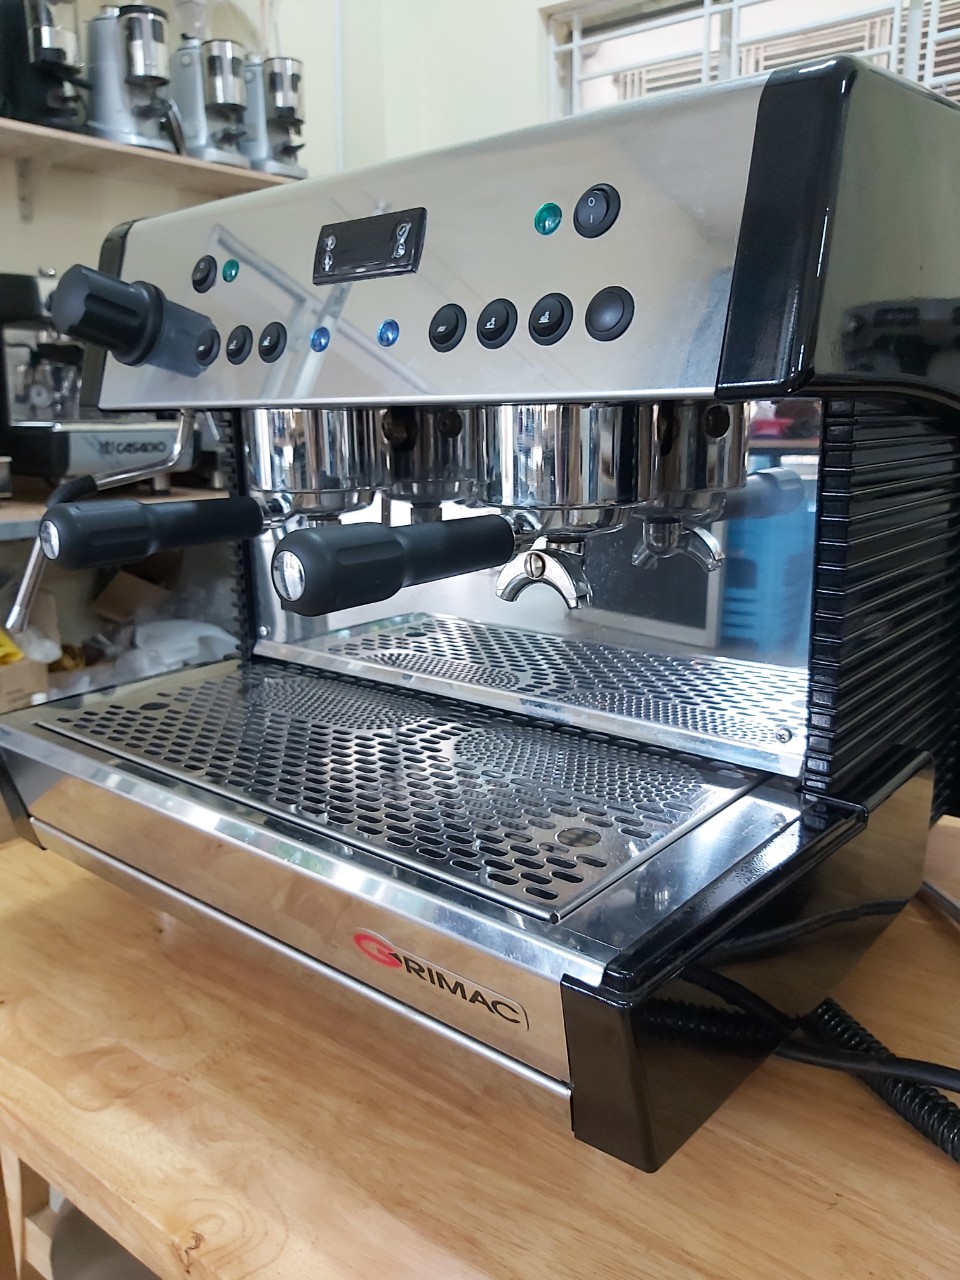 Thanh lý máy pha cafe ý Grimac G1 nhập khẩu nguyên chiếc giá rẻ 40%.